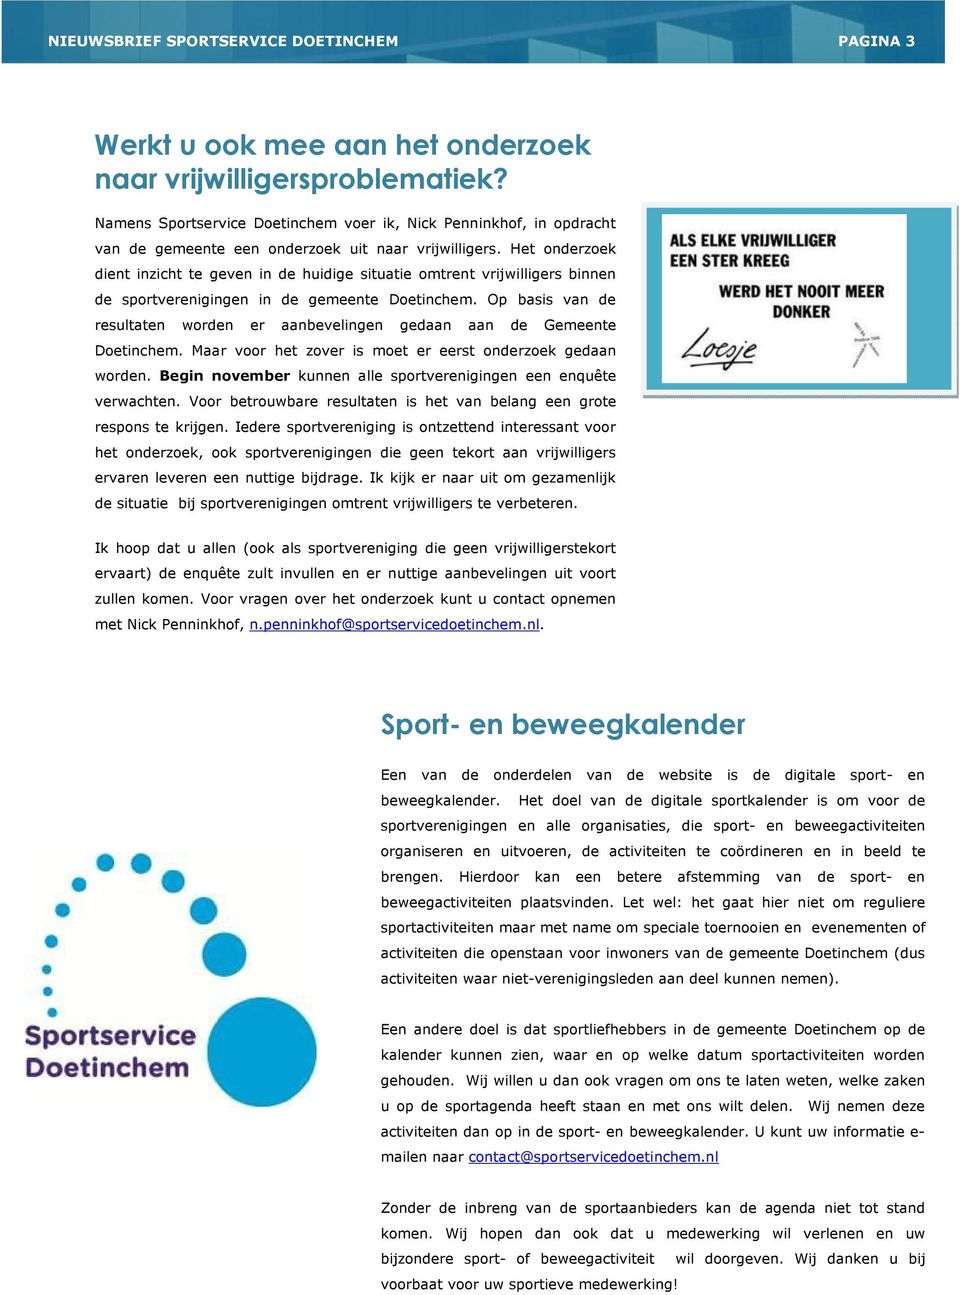 Het onderzoek dient inzicht te geven in de huidige situatie omtrent vrijwilligers binnen de sportverenigingen in de gemeente Doetinchem.